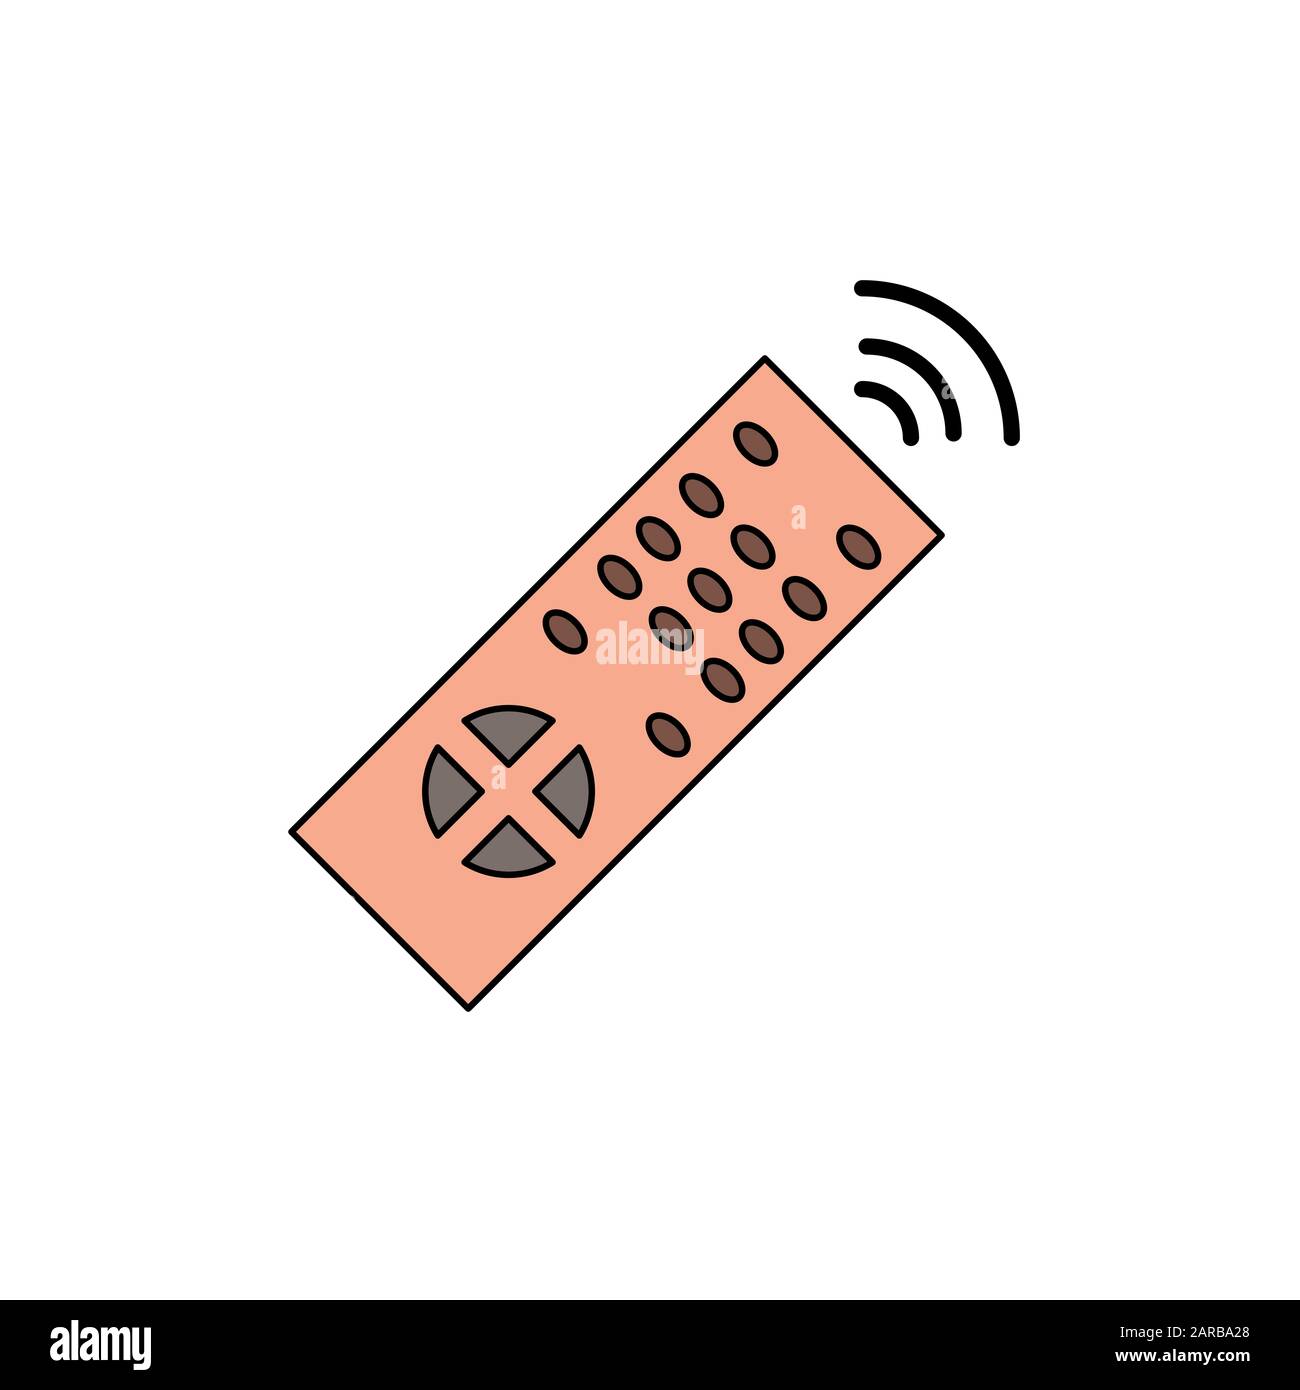 Remote control icon design template Stock Photo